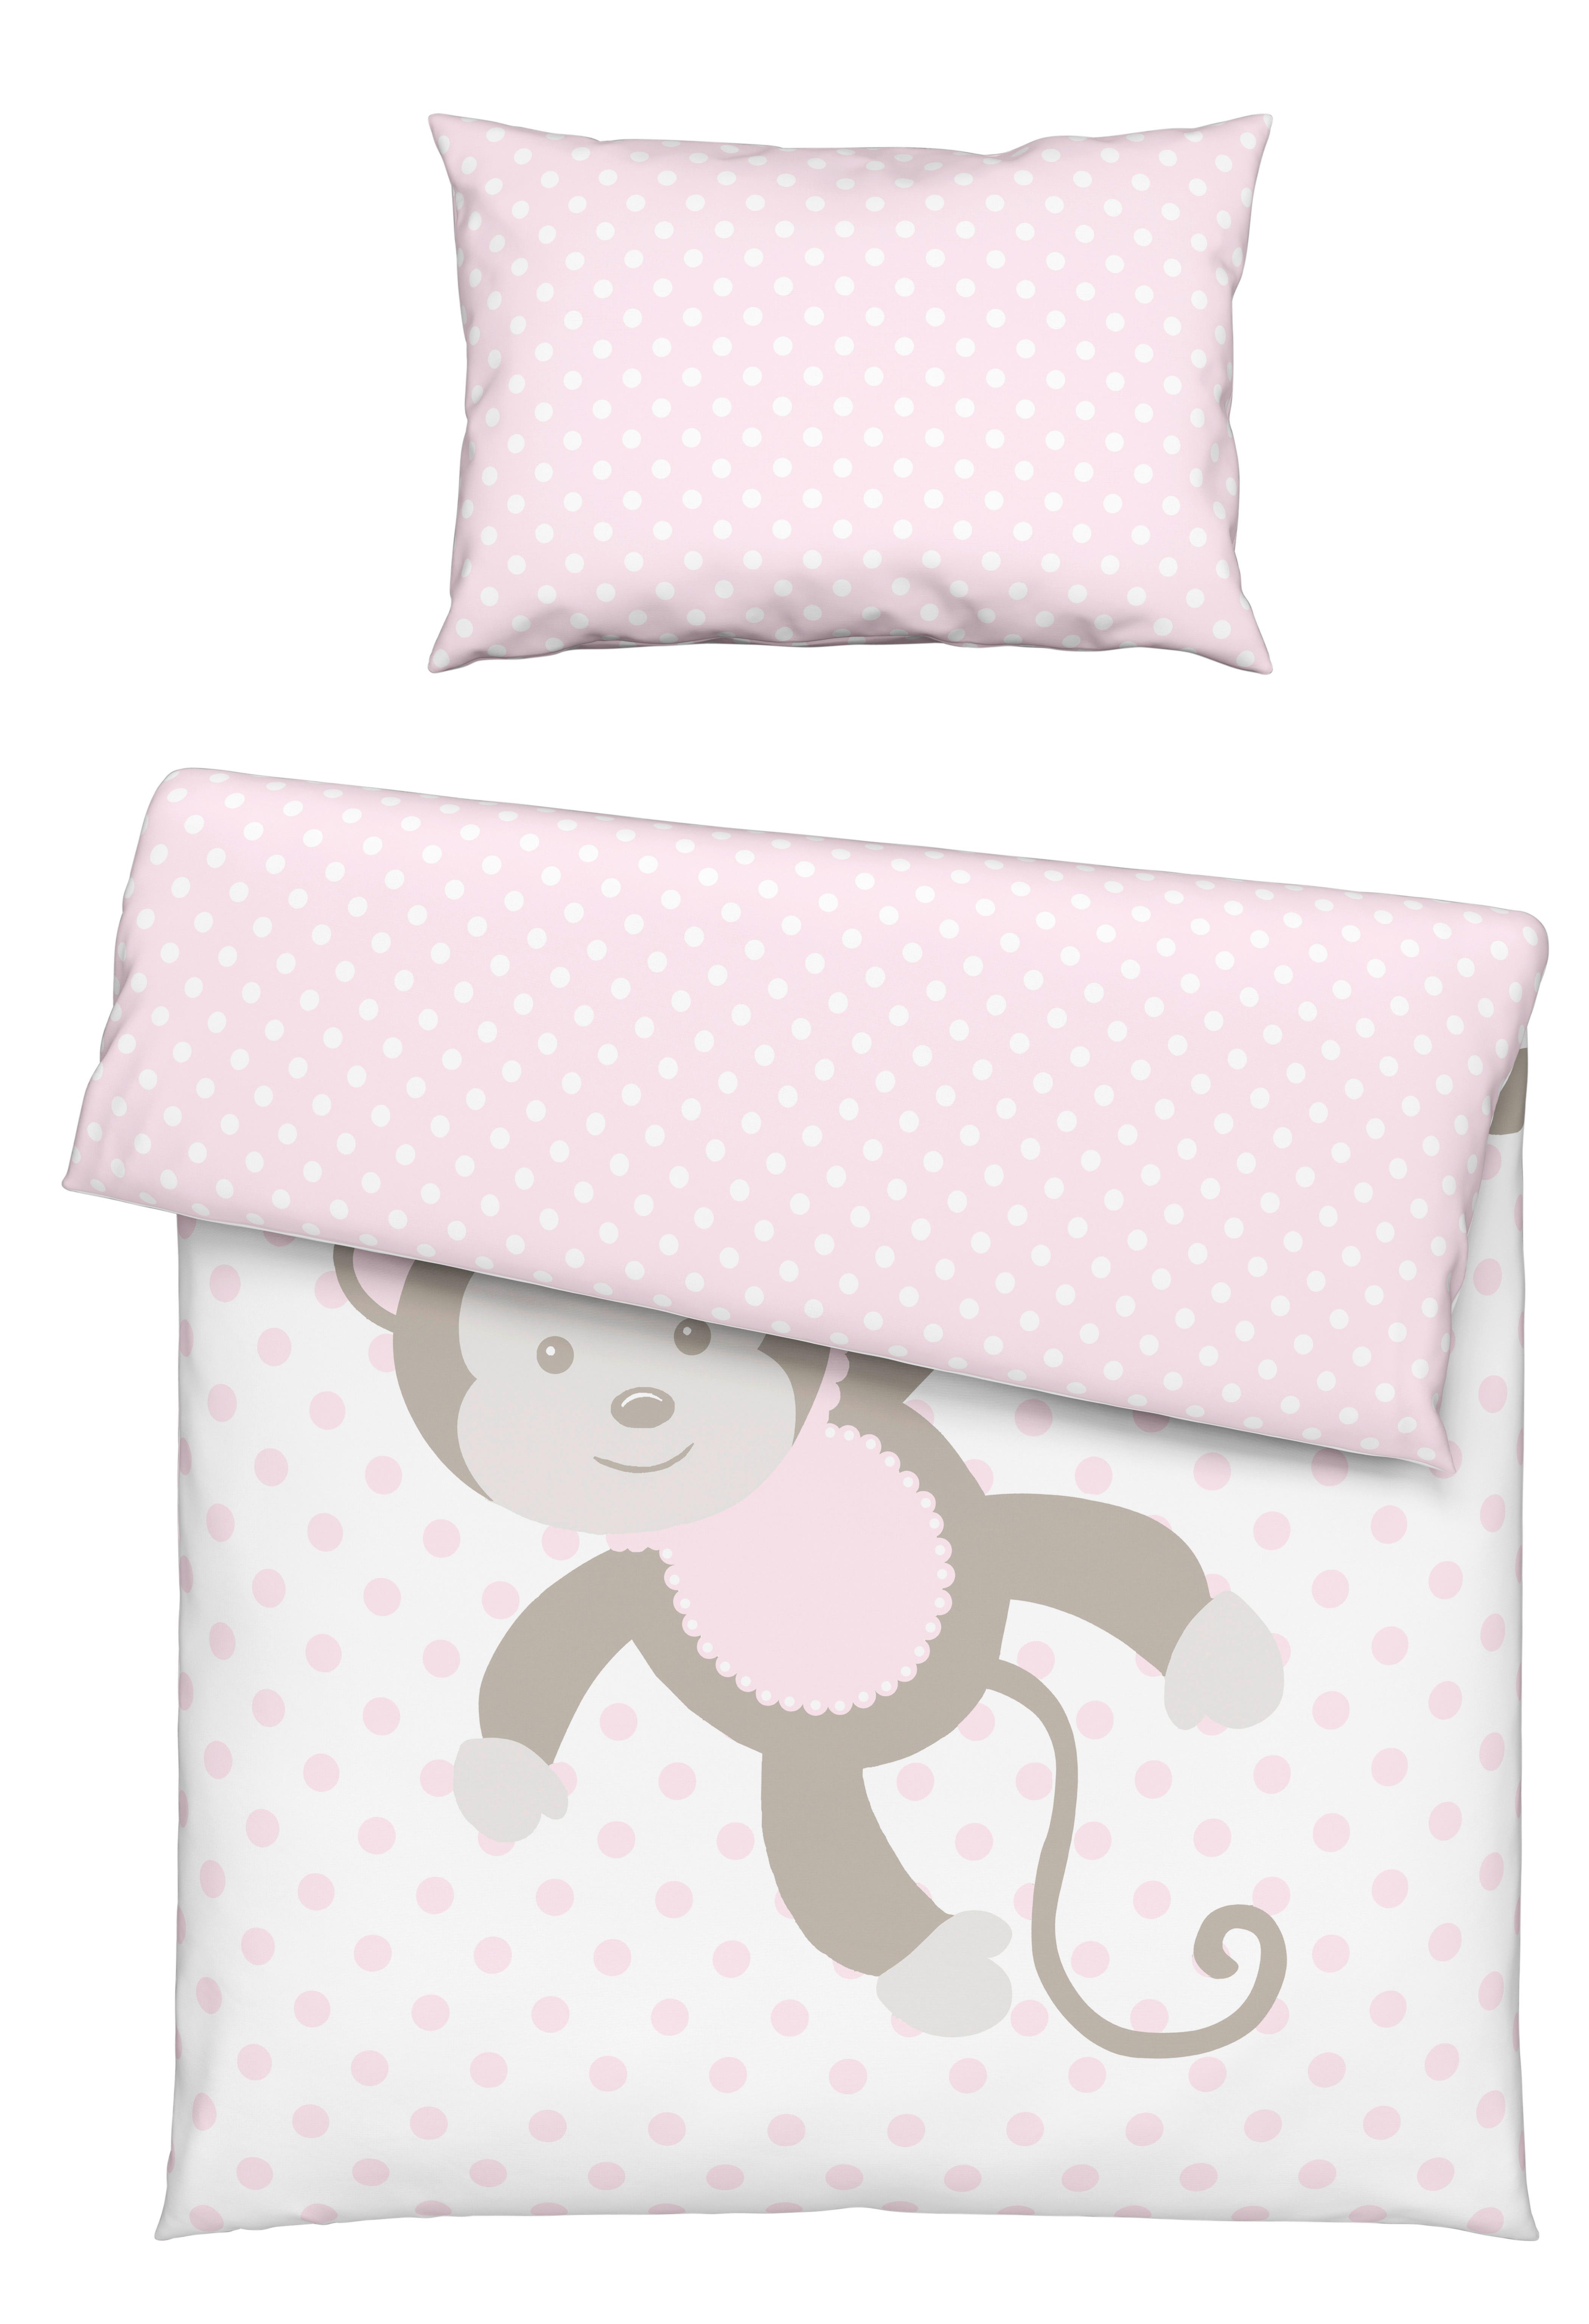 Povlečení Dětské Monkey Wende, 100/135cm - bílá/pink, textil (100/135cm) - Modern Living